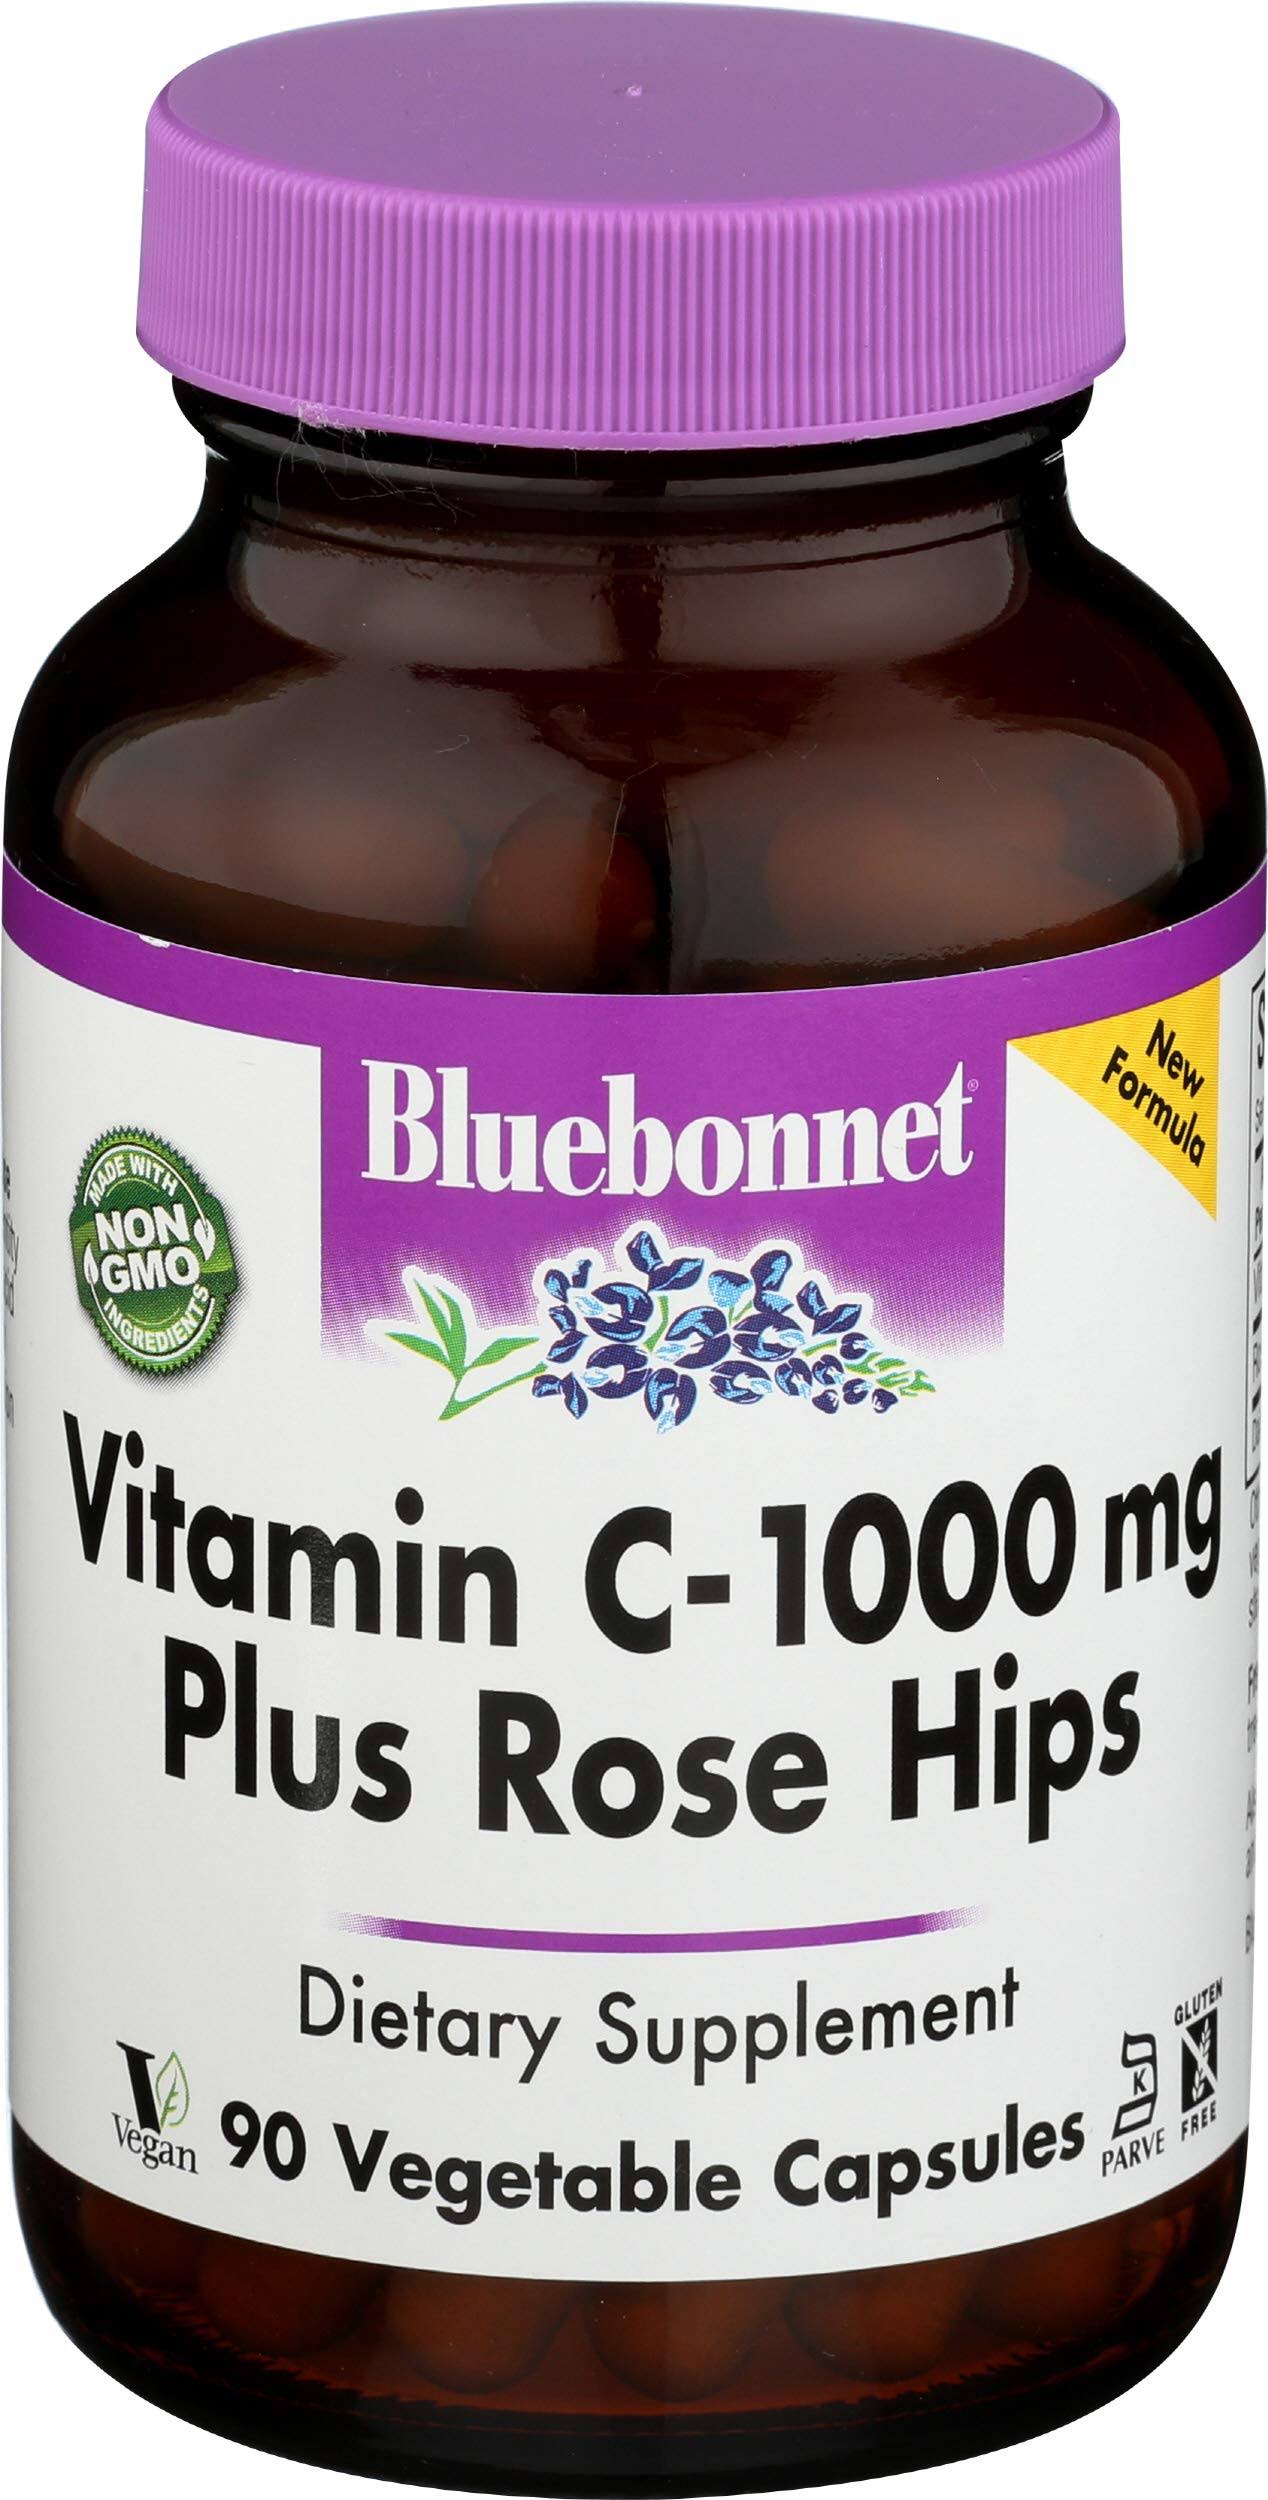 Vitamin C-1000 mg Plus Rose Hips - 90 Vegetarian Capsules